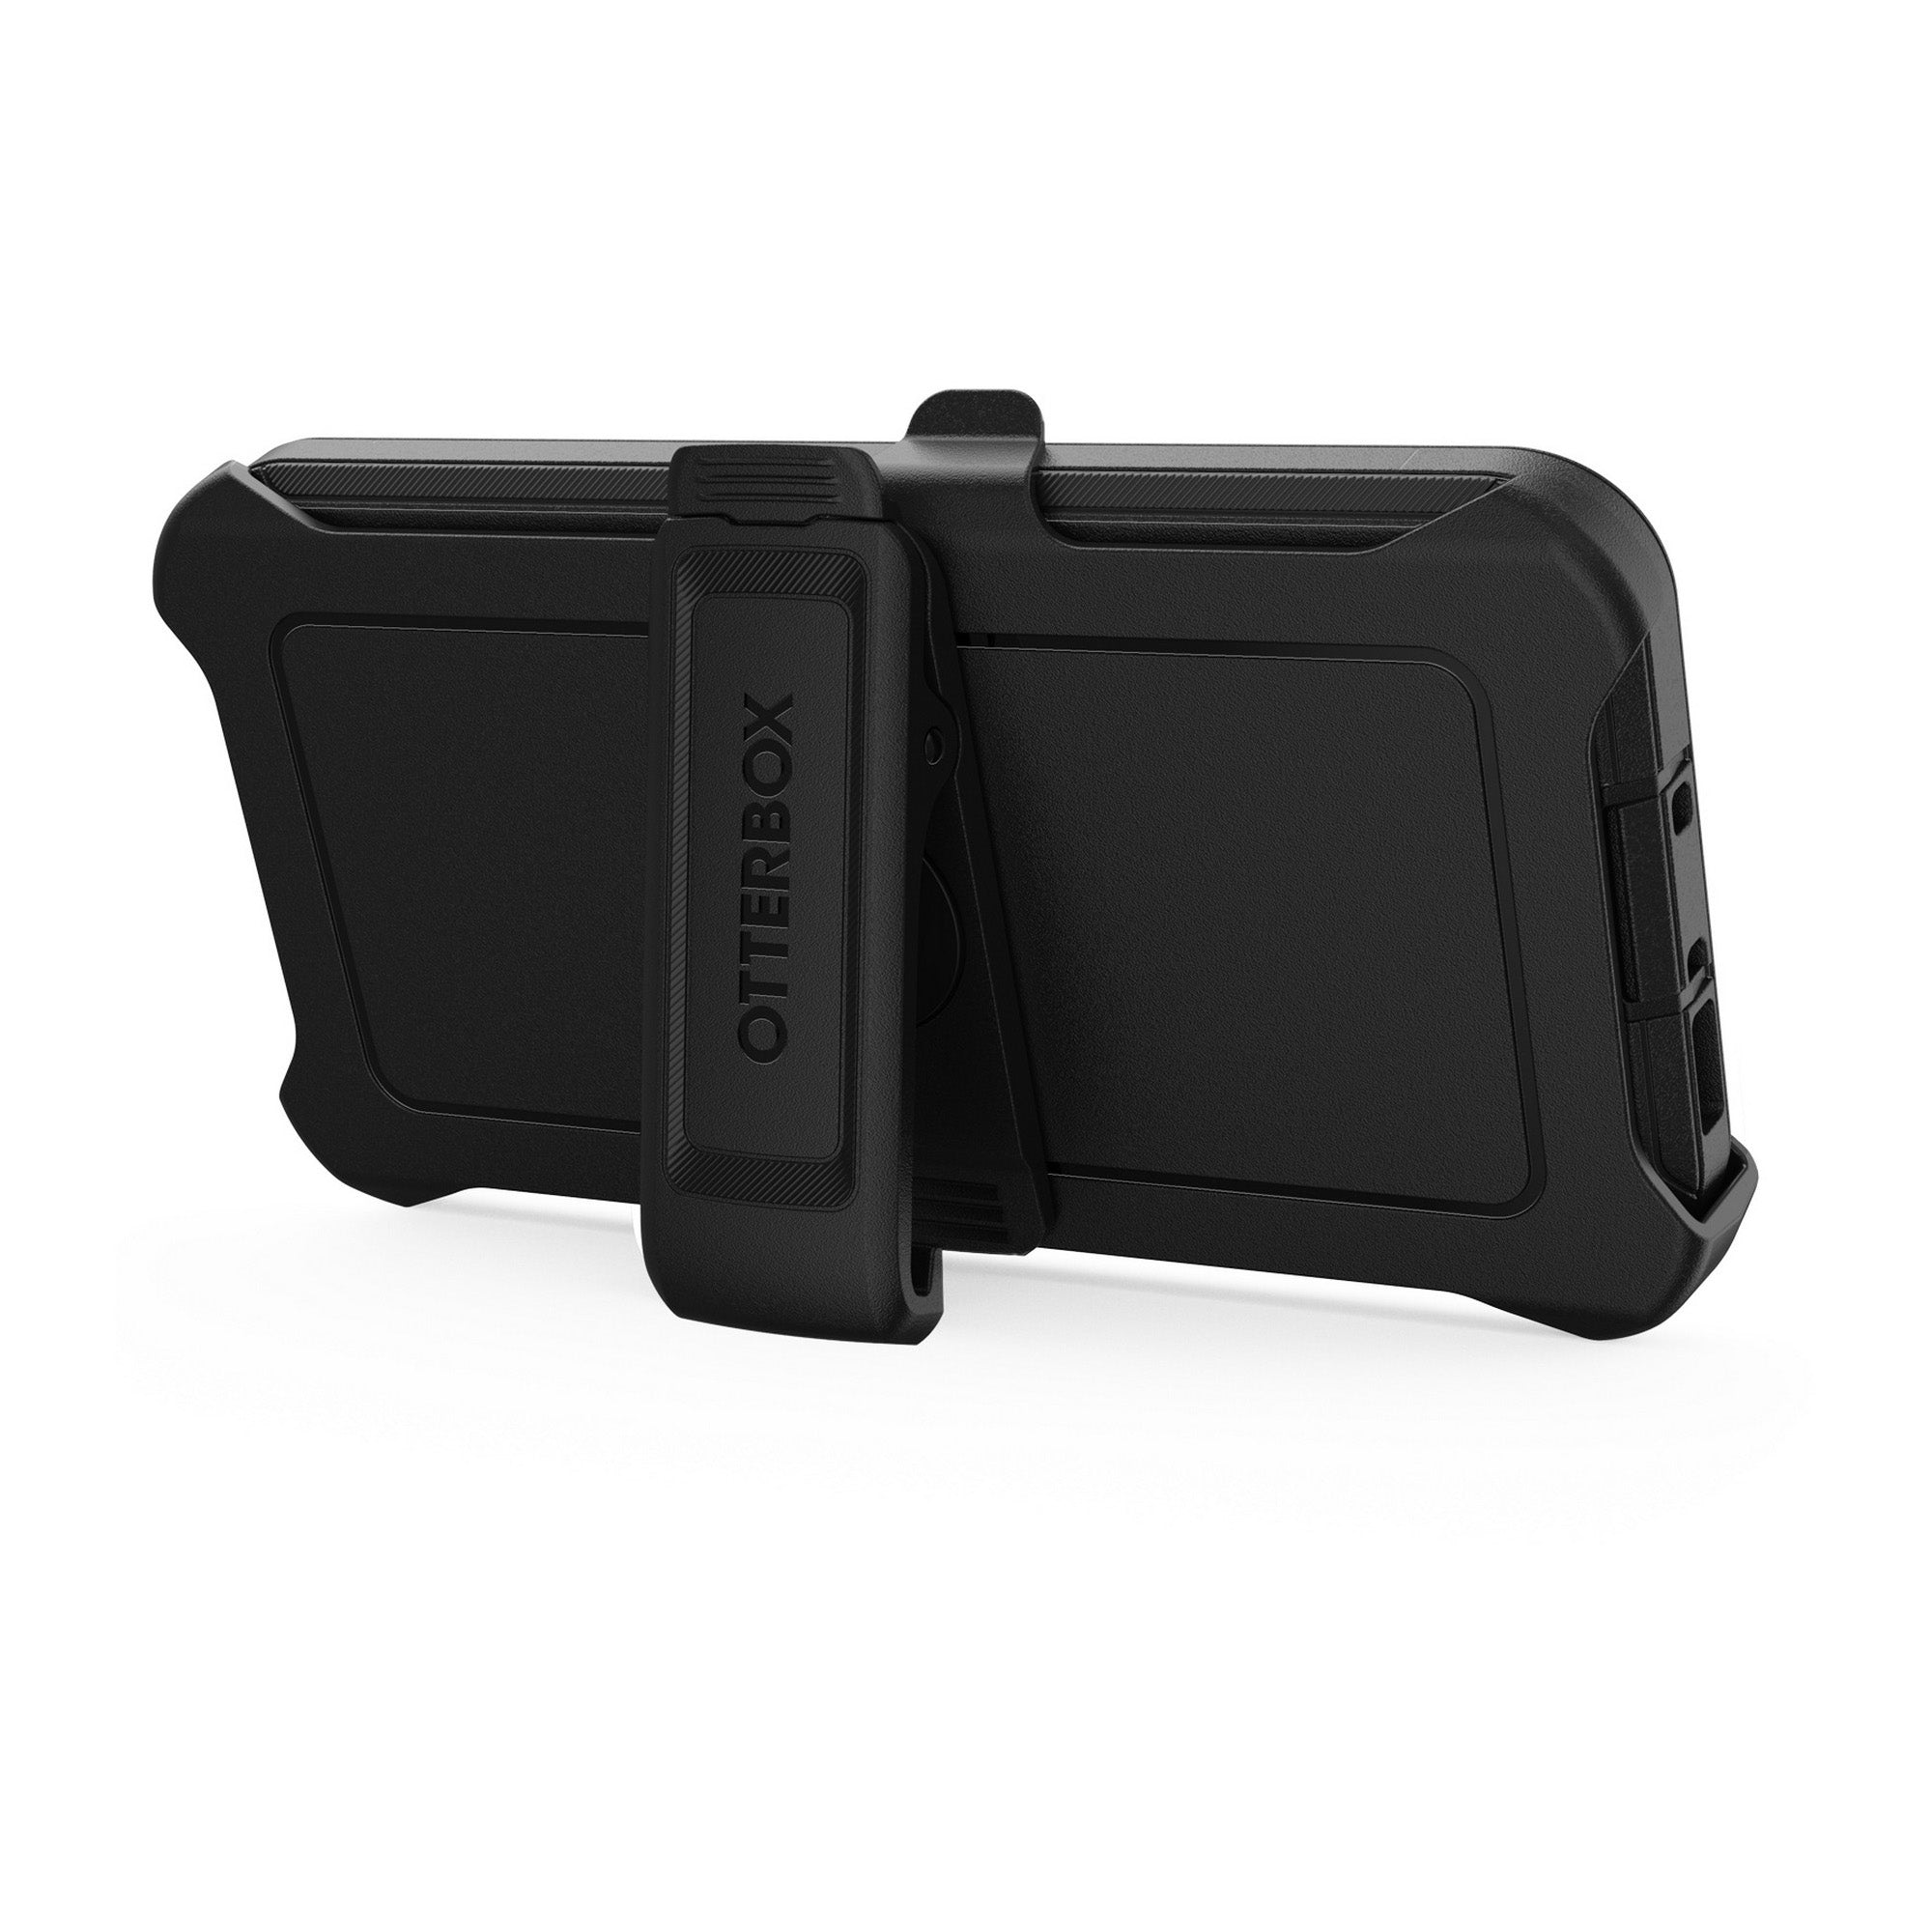 Samsung Galaxy S23 5G Otterbox Defender Series Case - Black - 15-10801